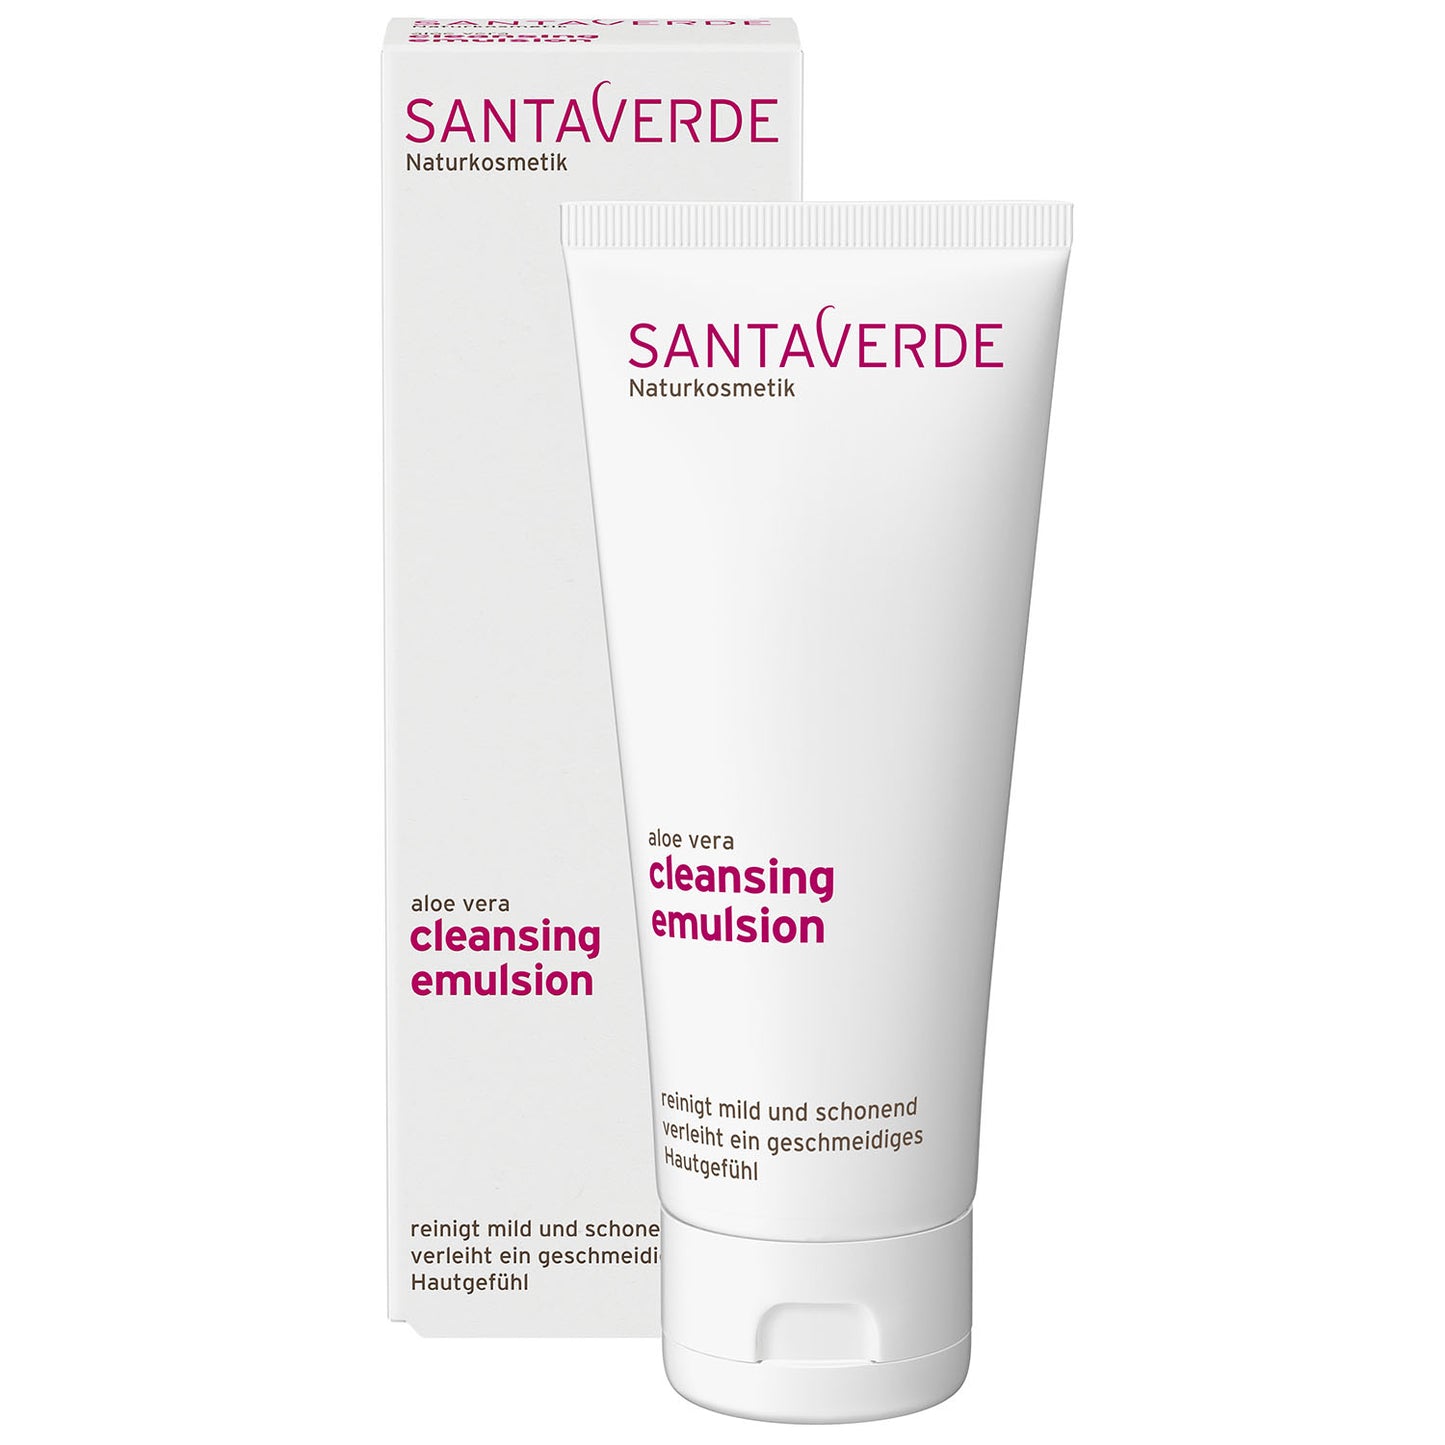 Santaverde - Aloe Vera Reinigungsemulsion - Sanfte Reinigung - 100 ml